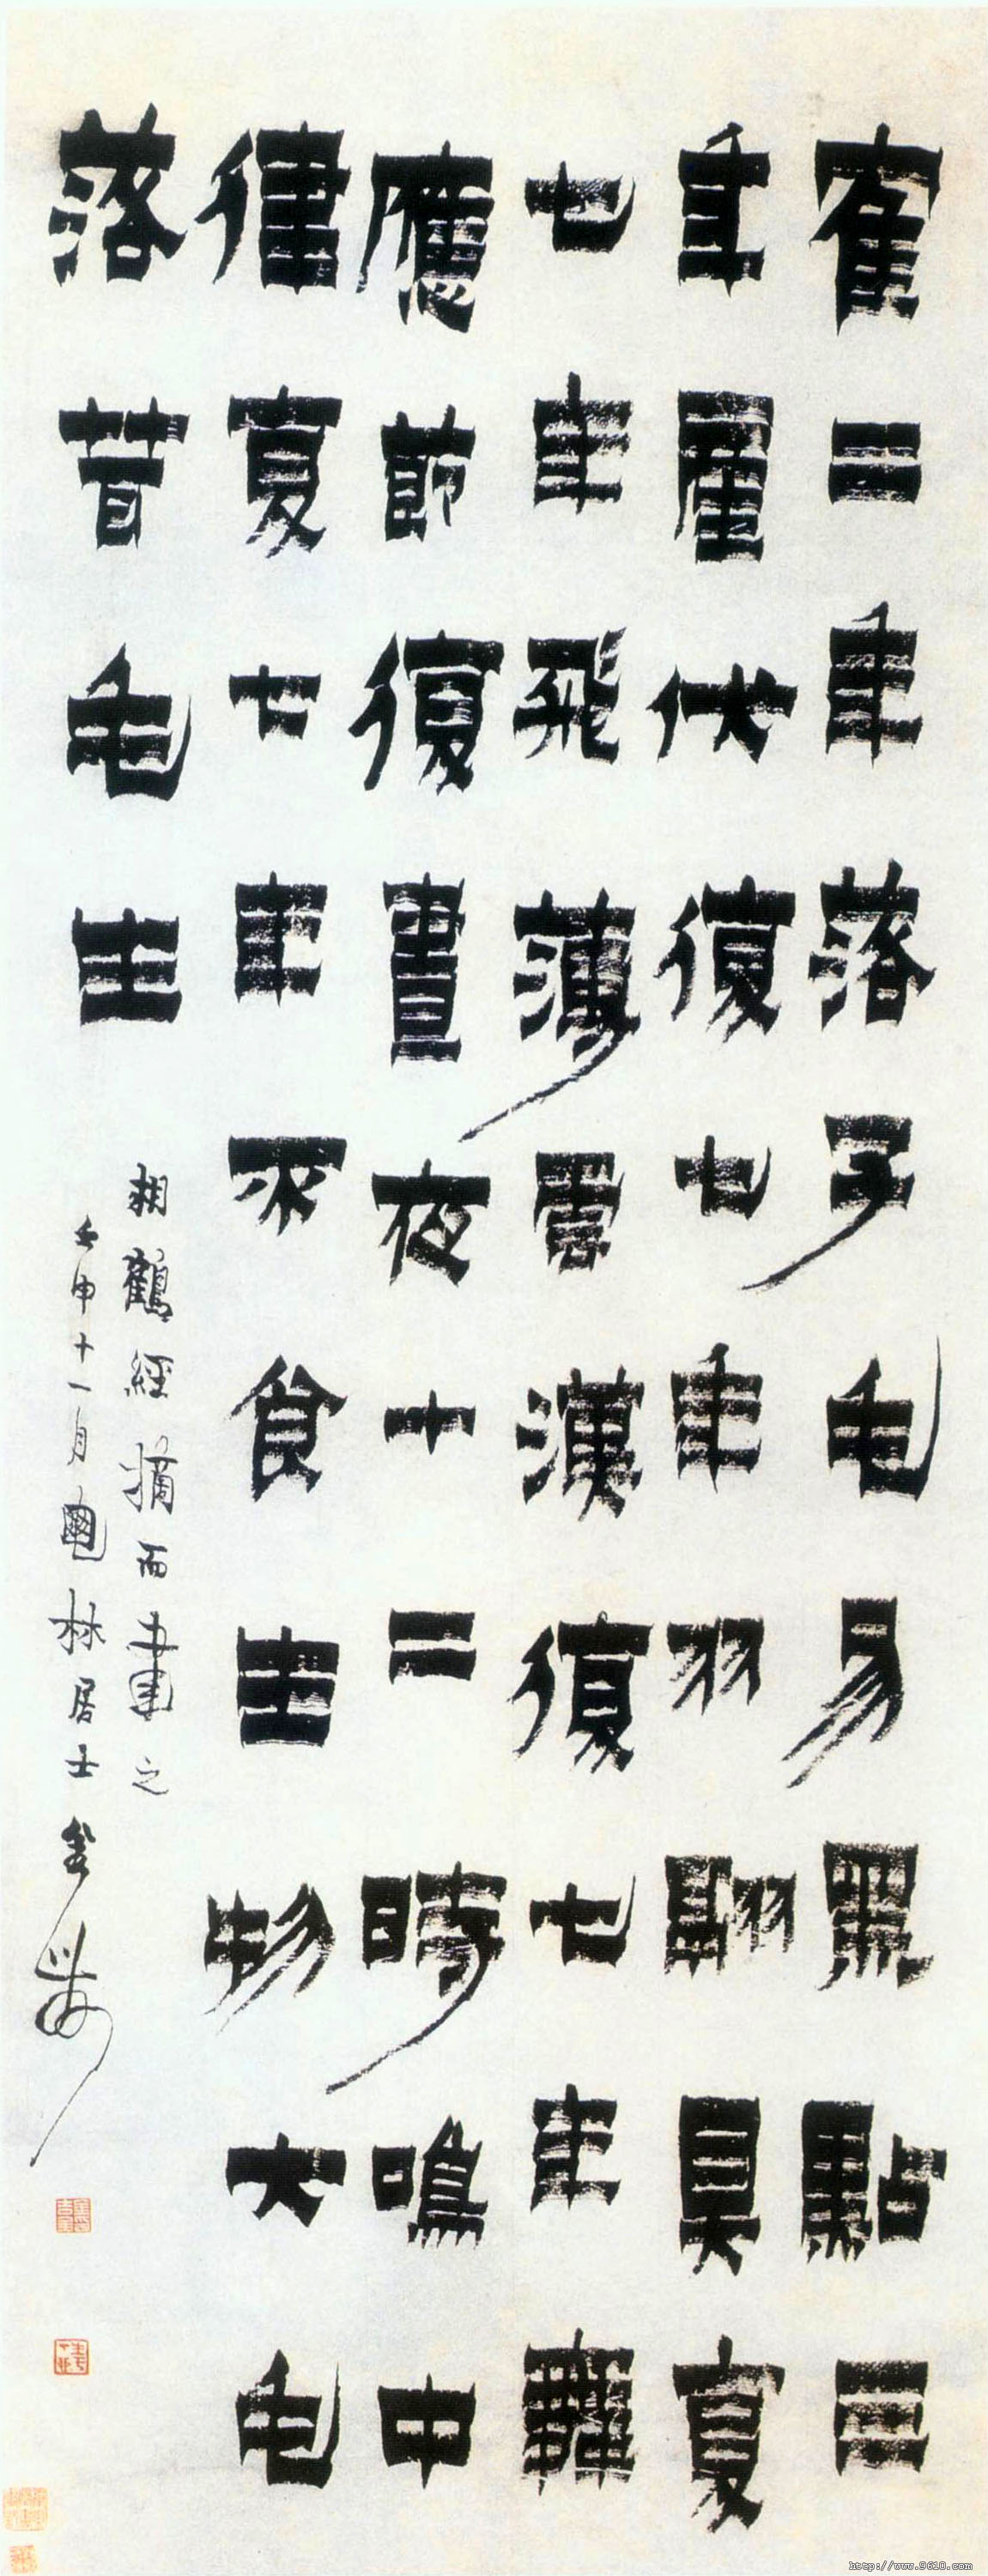 金农《漆书相鹤经轴》-北京故宫博物院藏(图1)